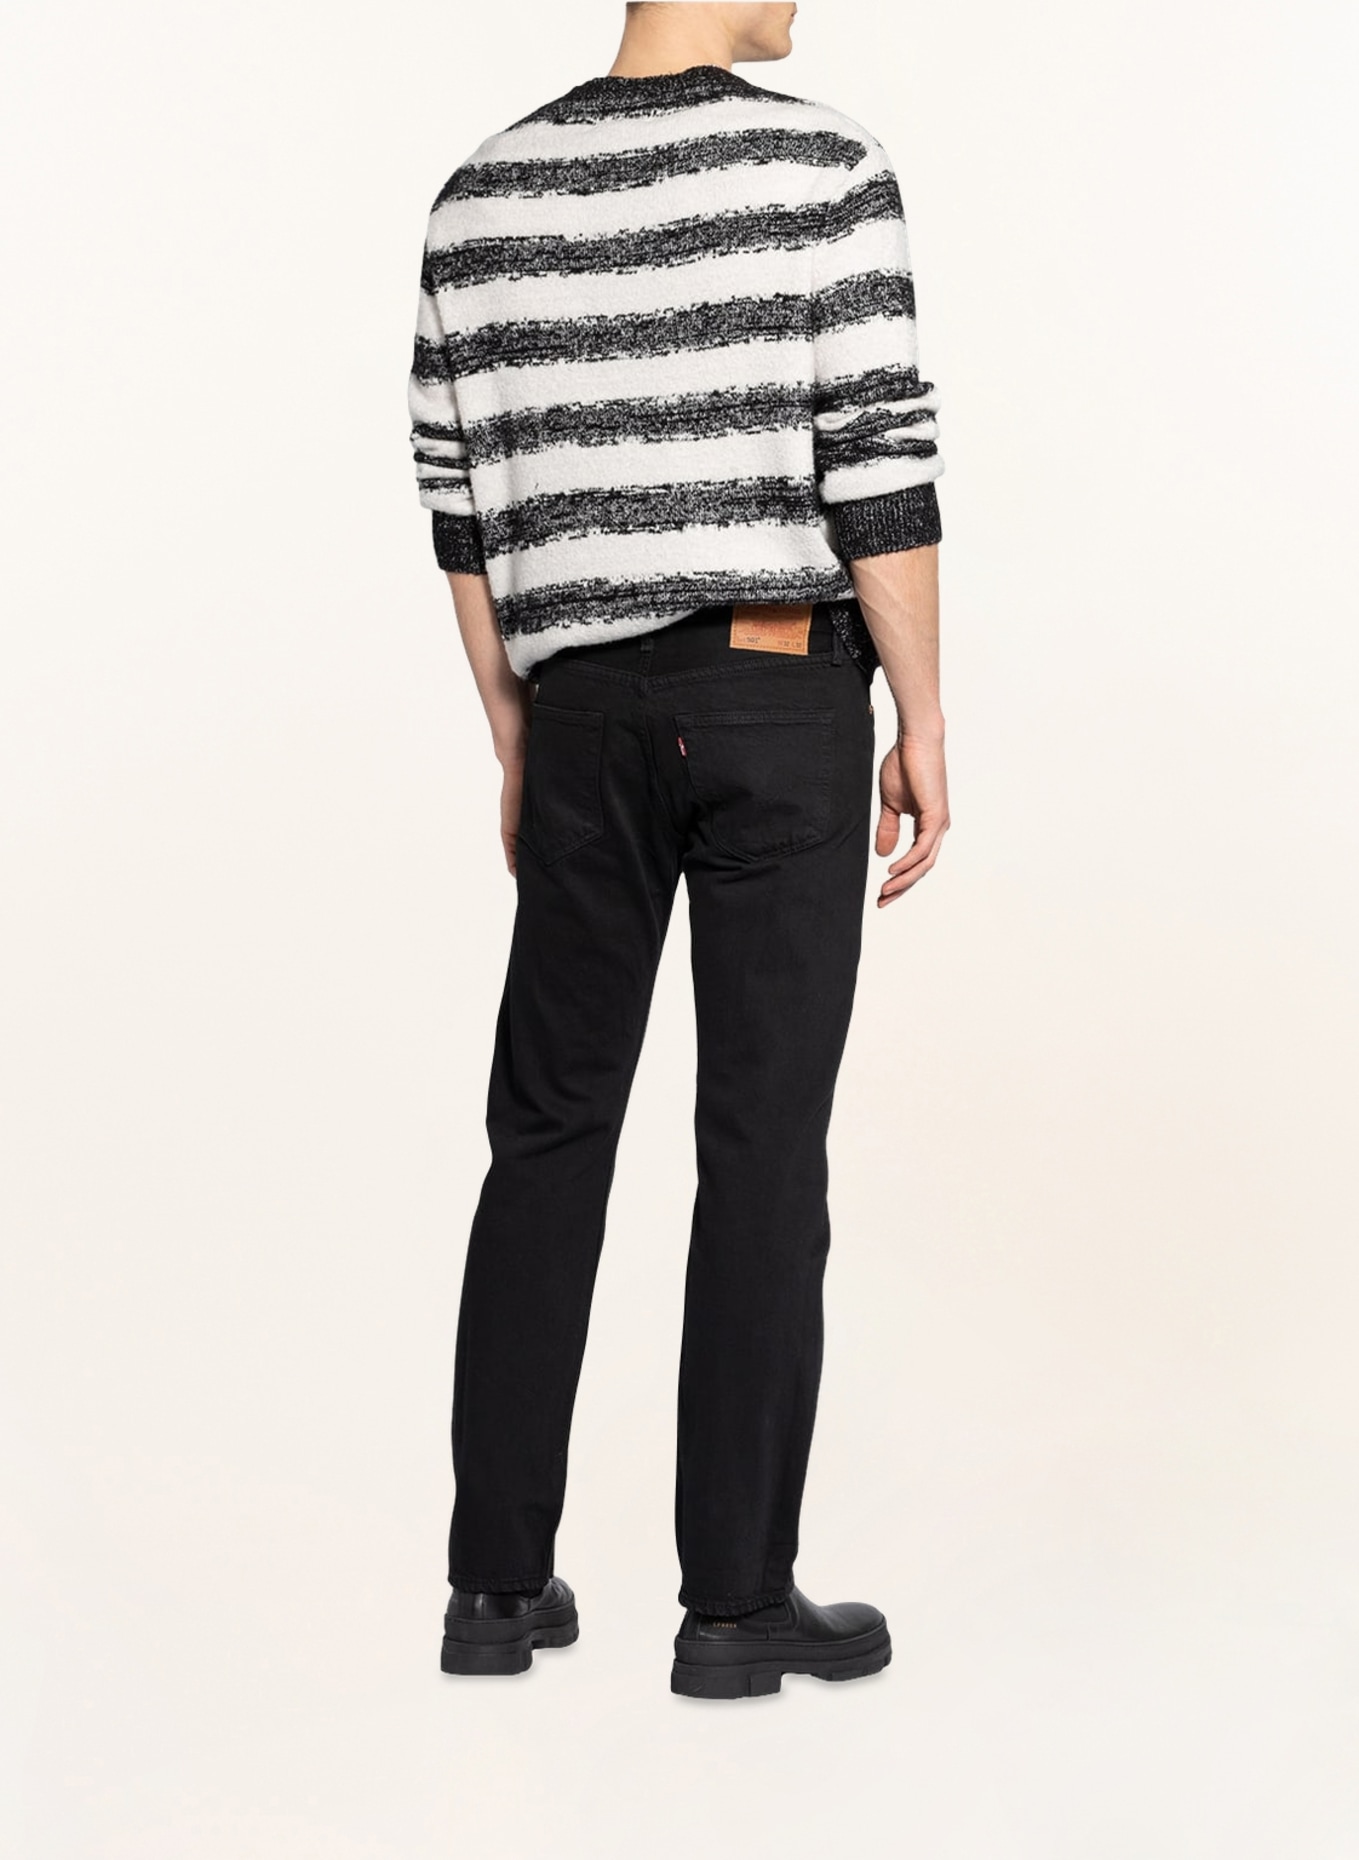 Levi's® Jeans 501 straight fit, Color: 65 Blacks (Image 3)